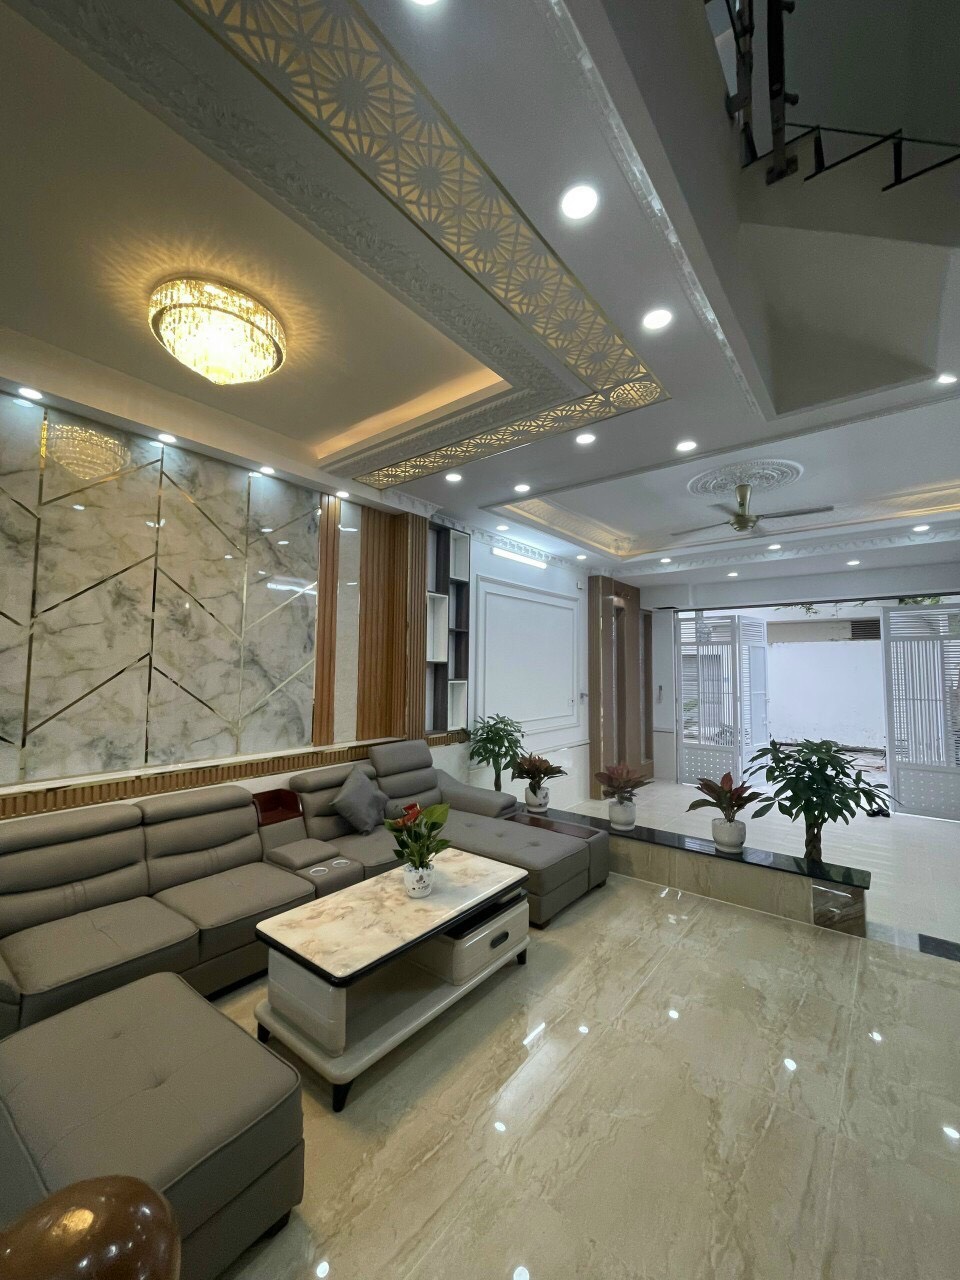 Bán nhà đẹp vào ở ngay đường Nguyễn Tri Phương phường 4 quận 10, DT: 4x12m, 2 lầu ST, giá 8.2 tỷ